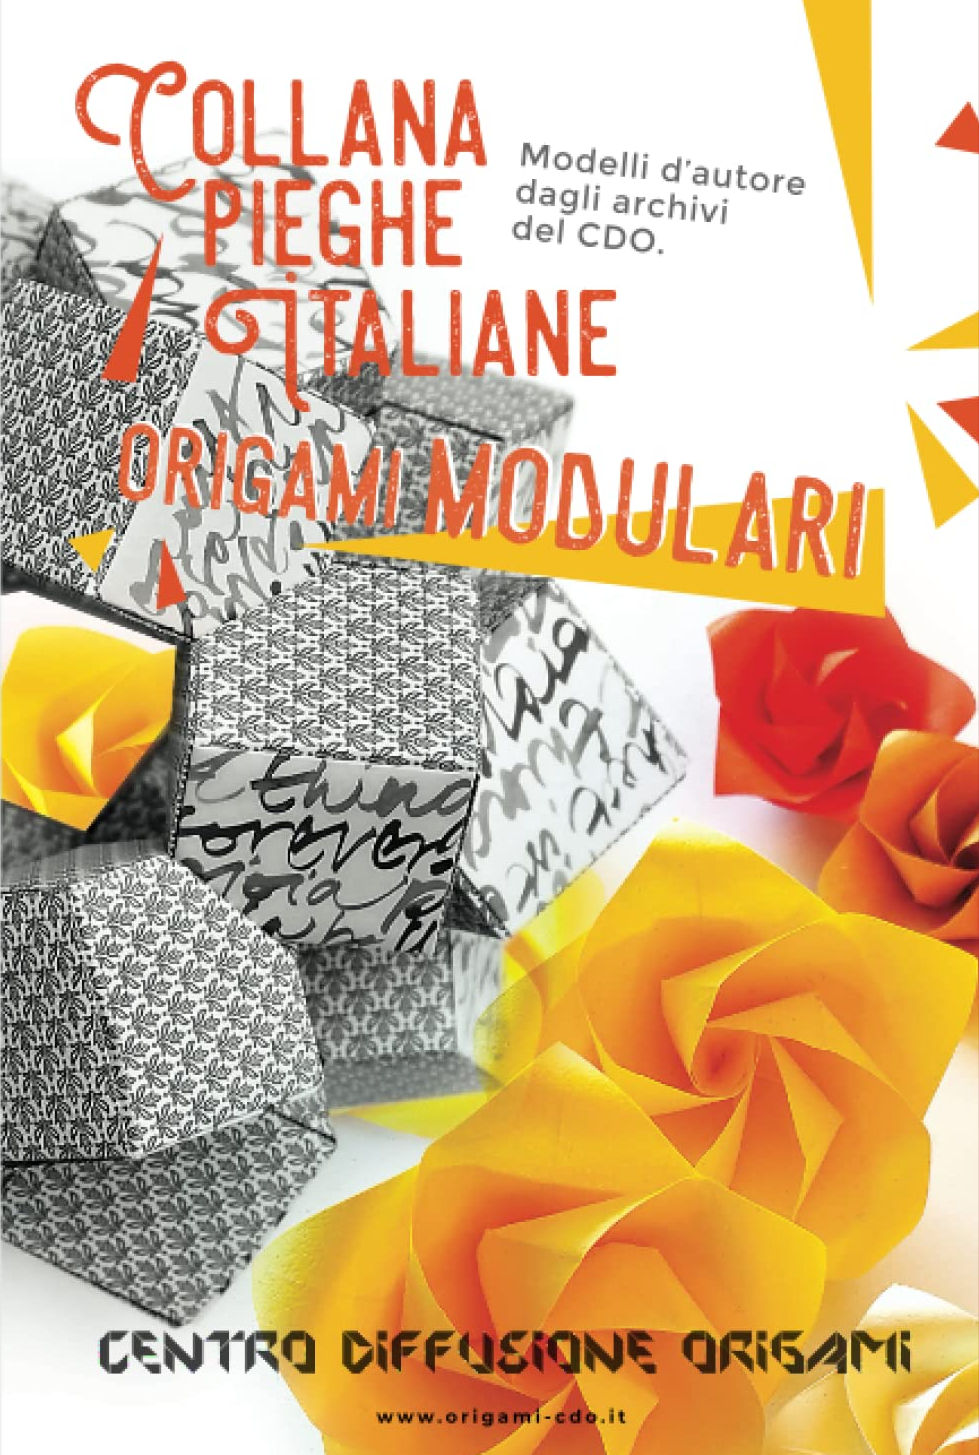 Collana pieghe Italiane - origami MODULARI : page 10.